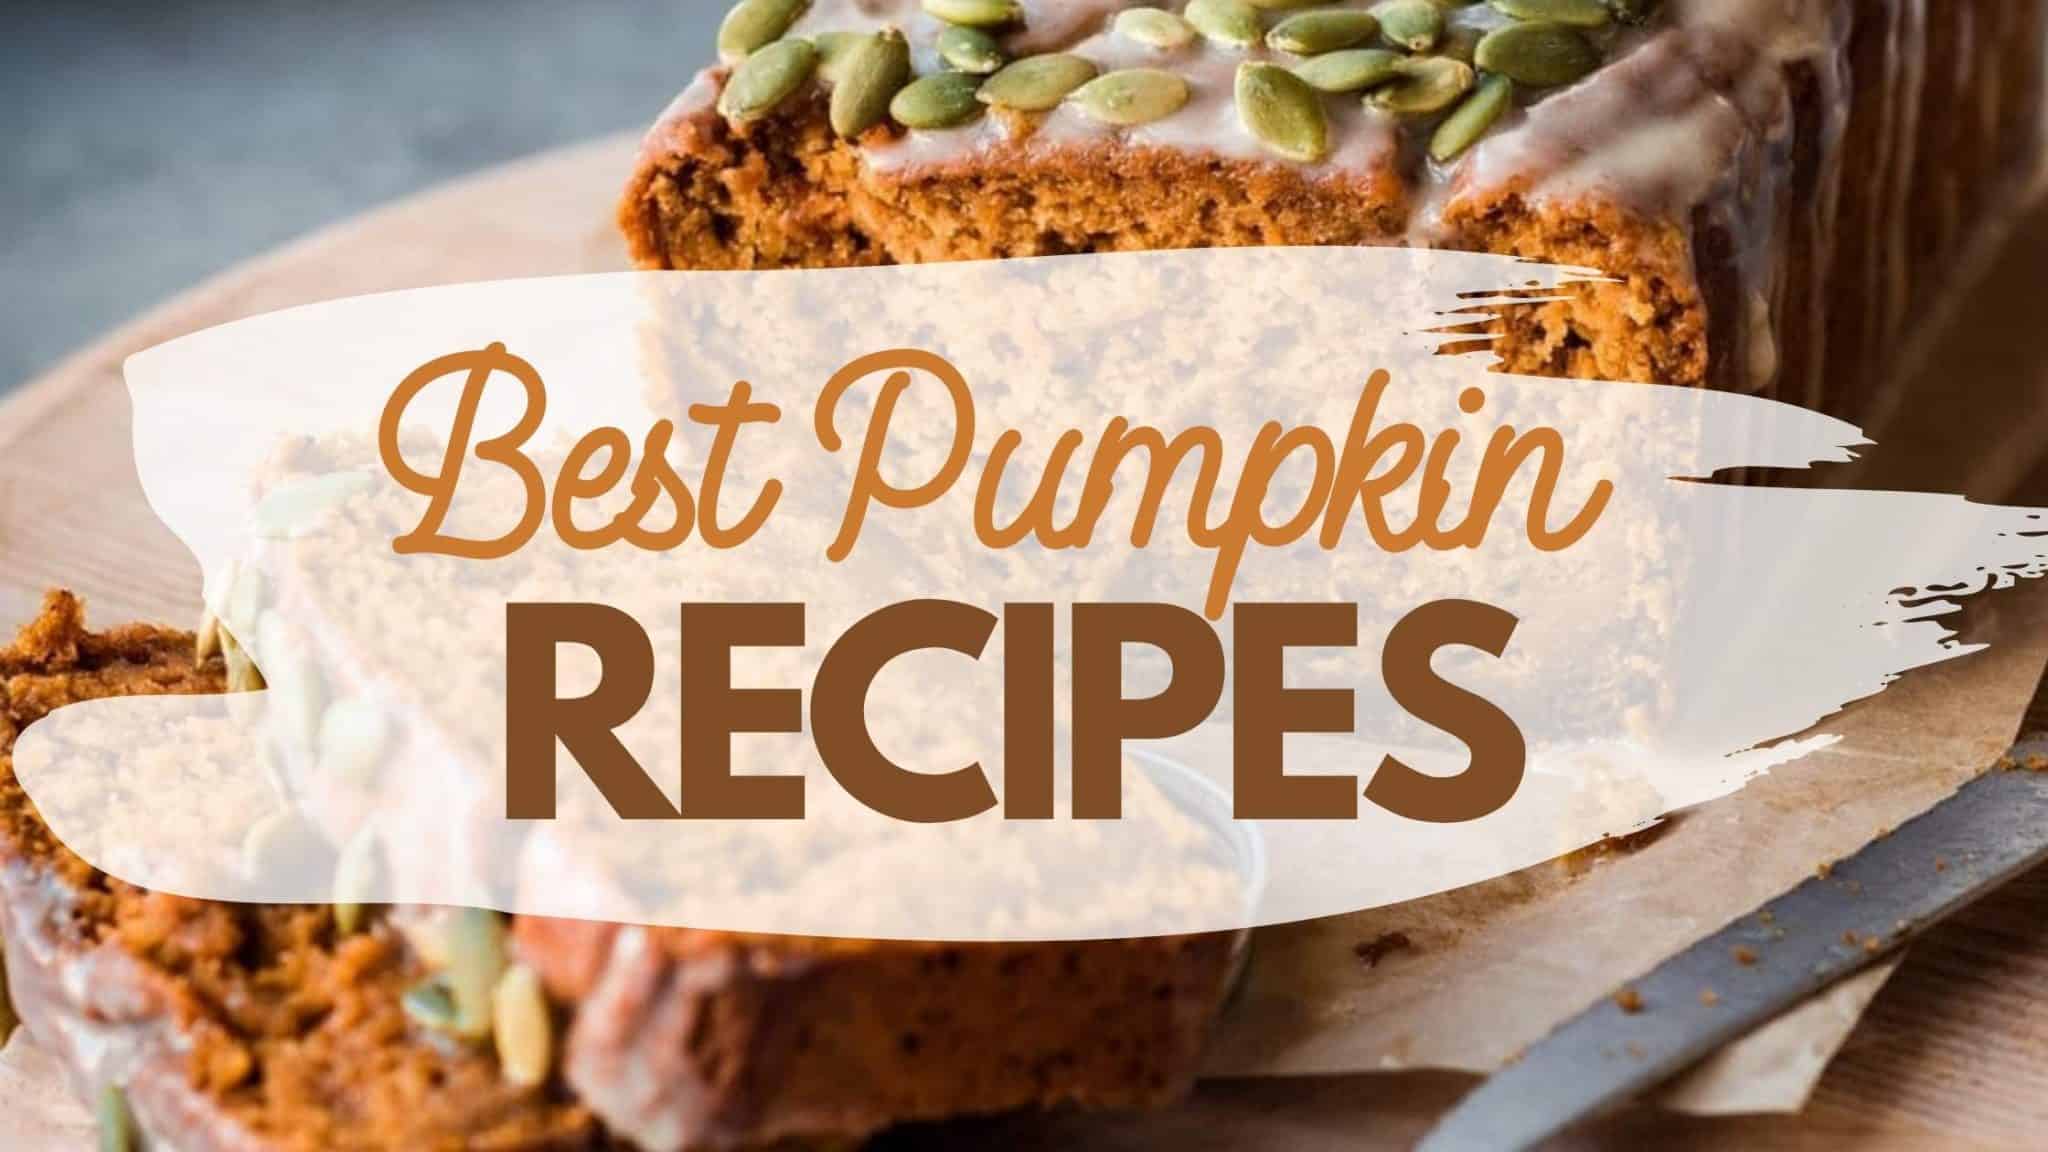 Pumpkin bread with text overlay "Best Pumpkin Recipes."